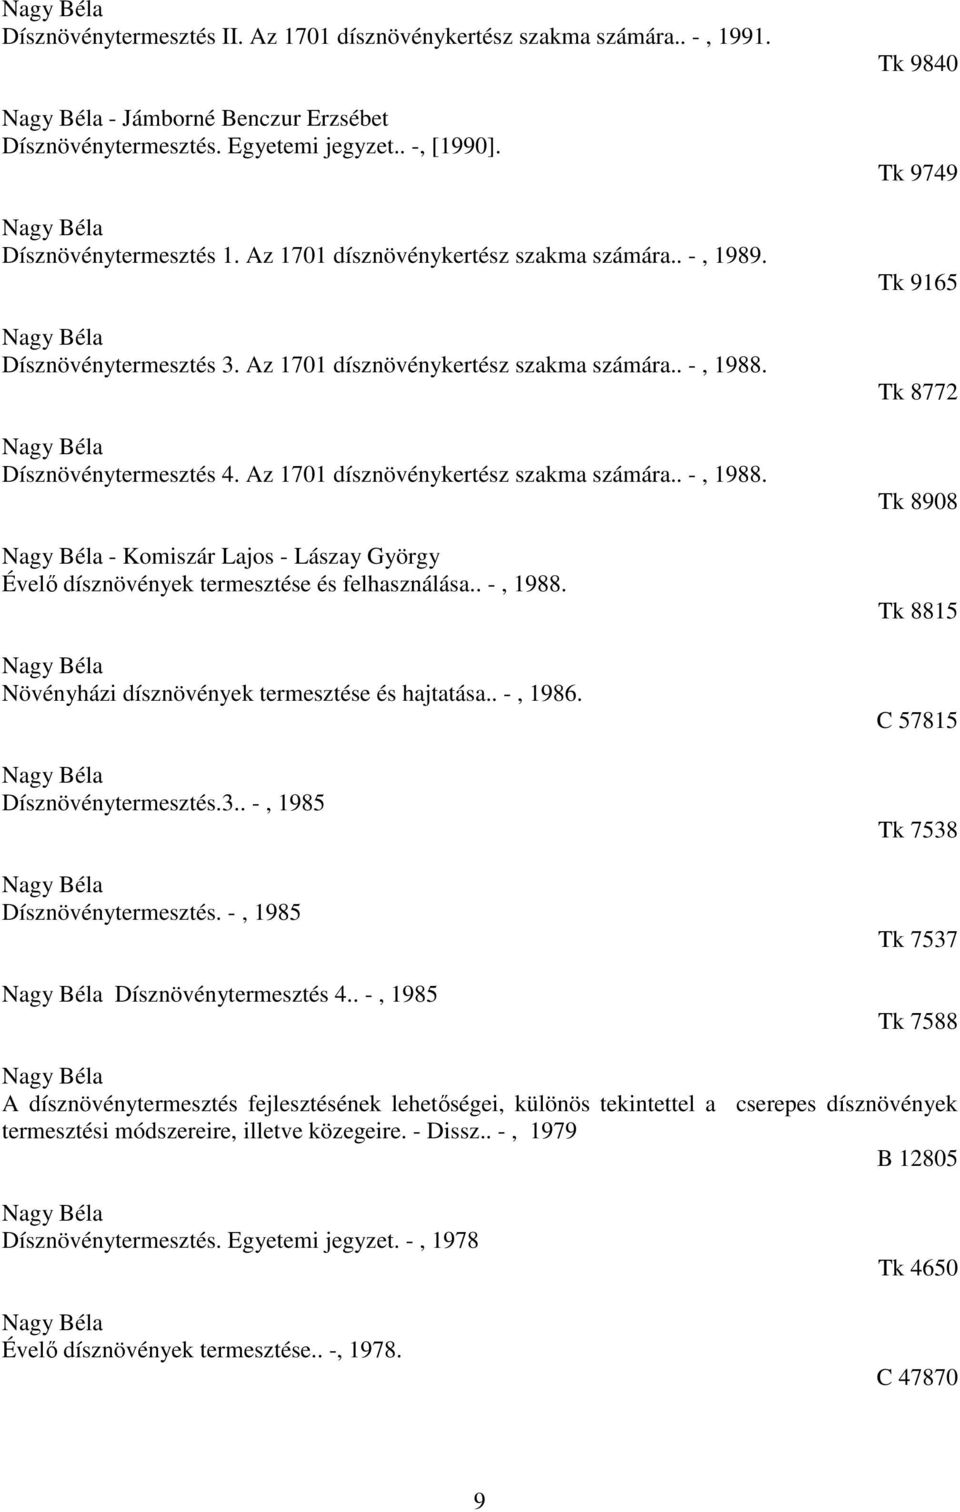 Dísznövénytermesztés 4. Az 1701 dísznövénykertész szakma számára.. -, 1988. - Komiszár Lajos - Lászay György Évelő dísznövények termesztése és felhasználása.. -, 1988. Növényházi dísznövények termesztése és hajtatása.